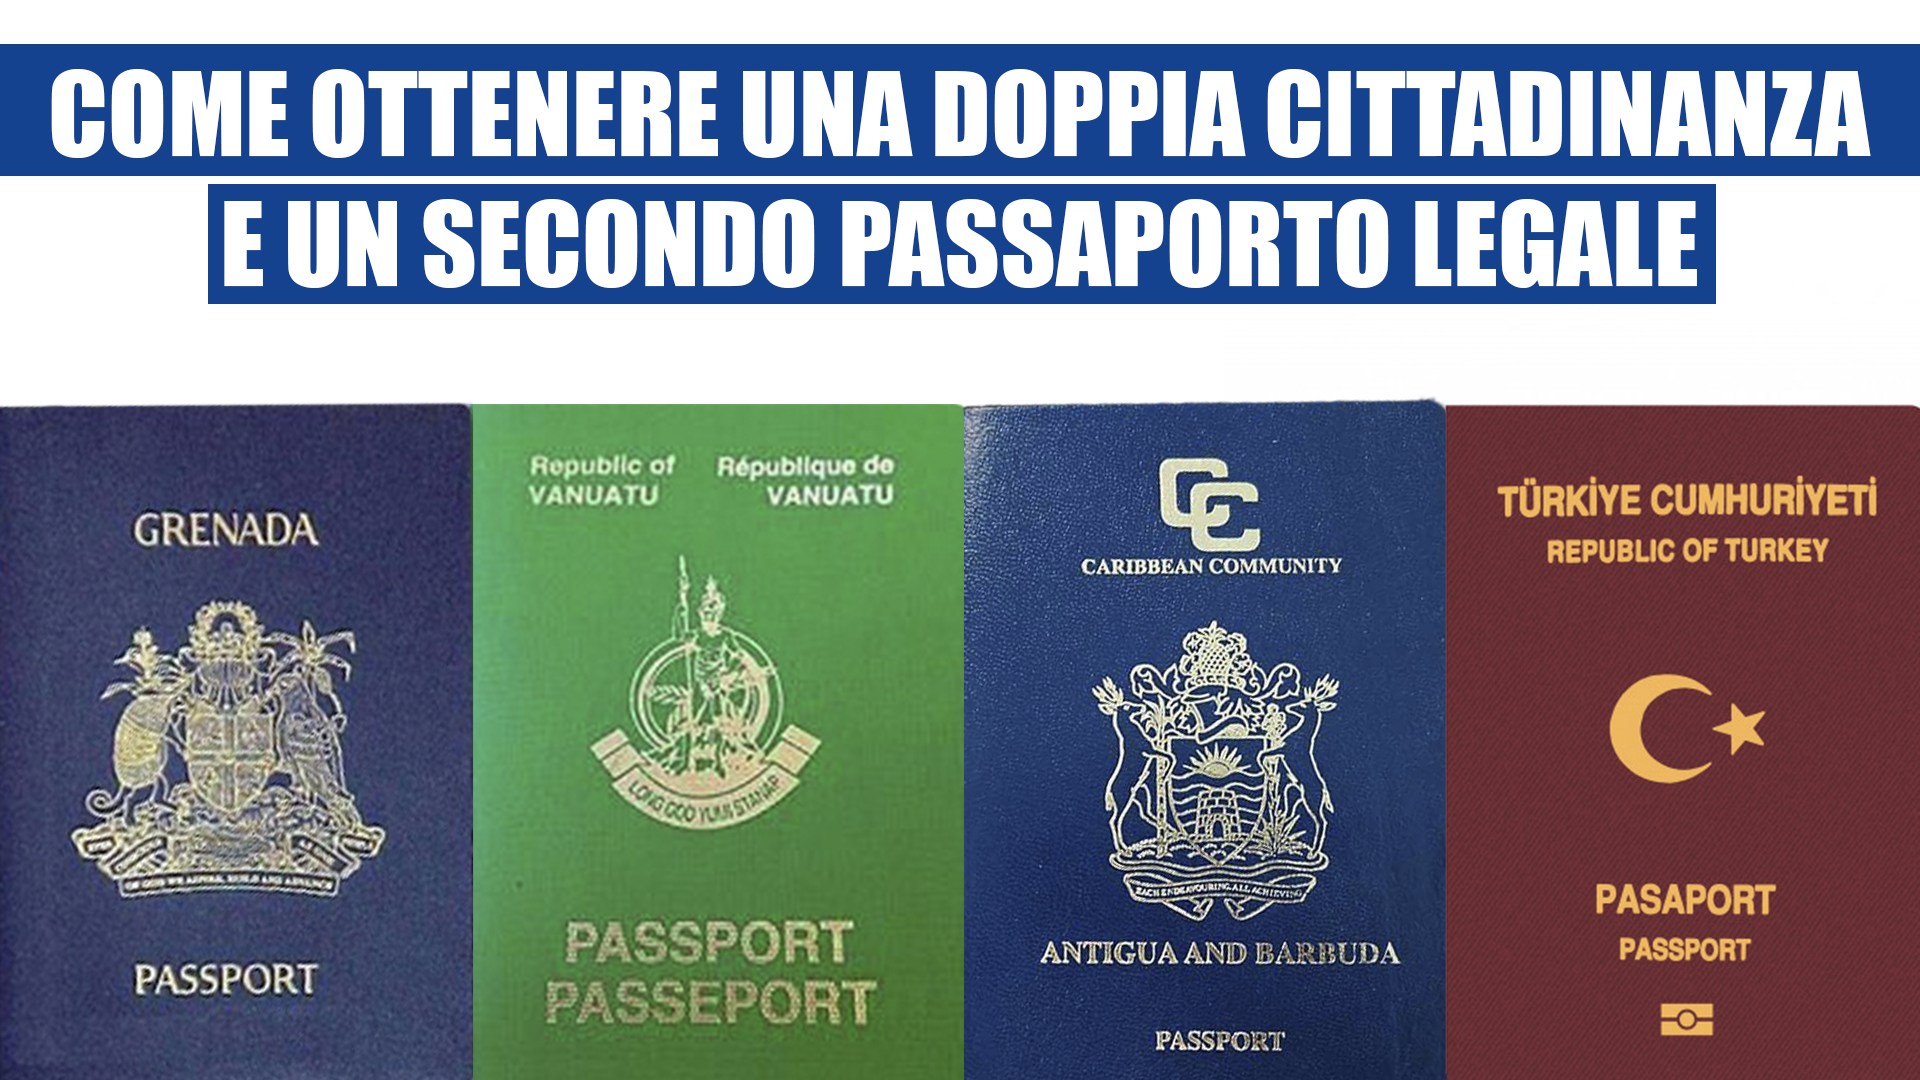 Come ottenere una doppia cittadinanza e secondo passaporto legale?